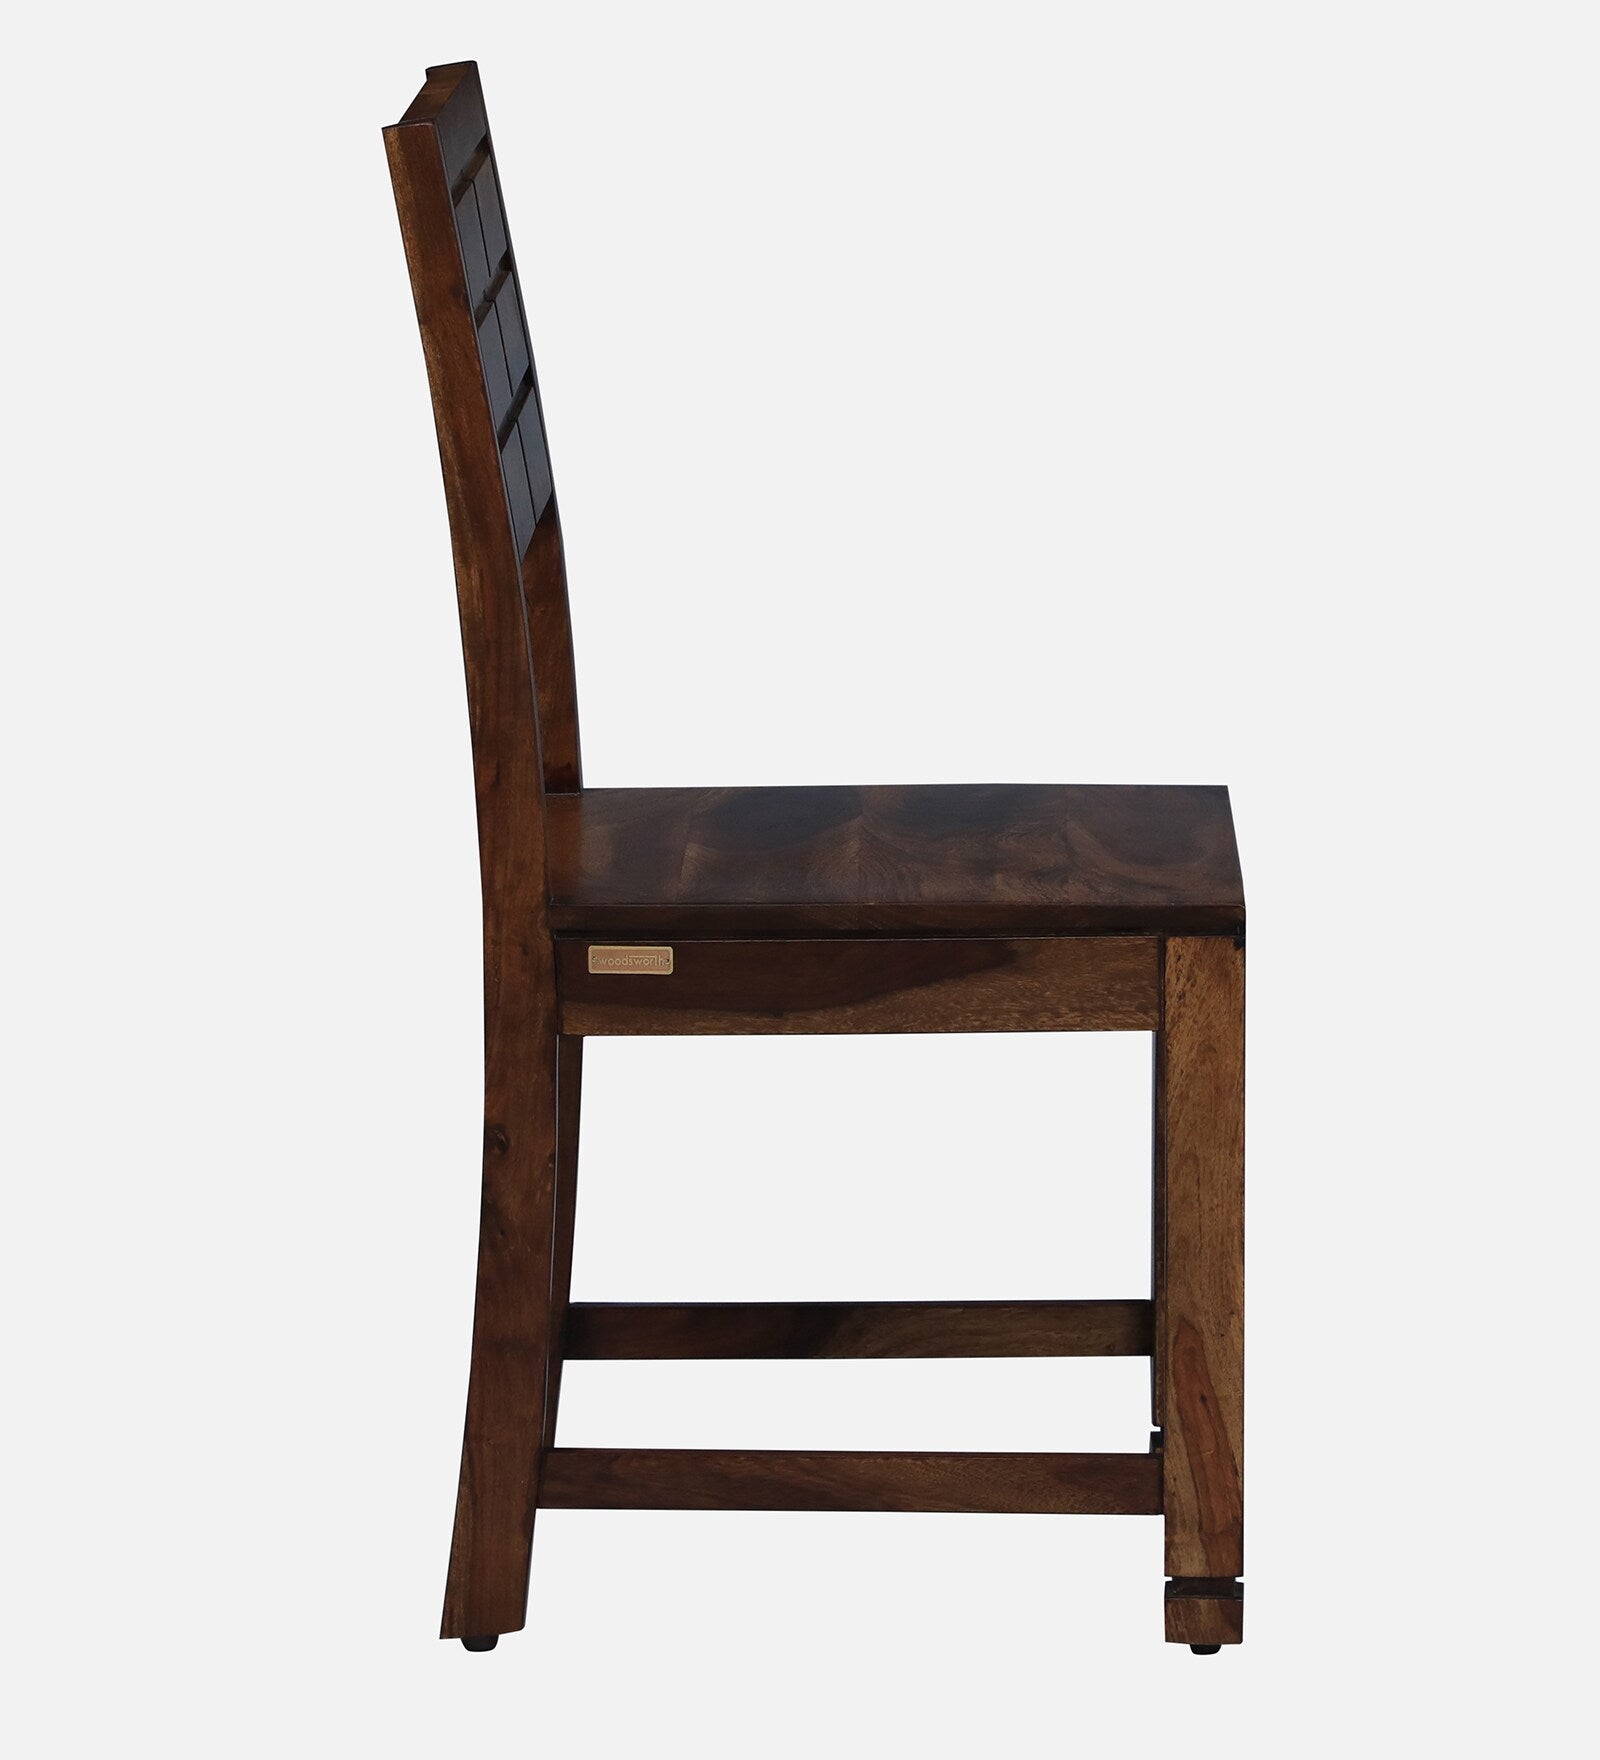 Moscow Solid Wood Dining Chair (Set of 2) in Provincial Teak Finish By Rajwada - Rajwada Furnish